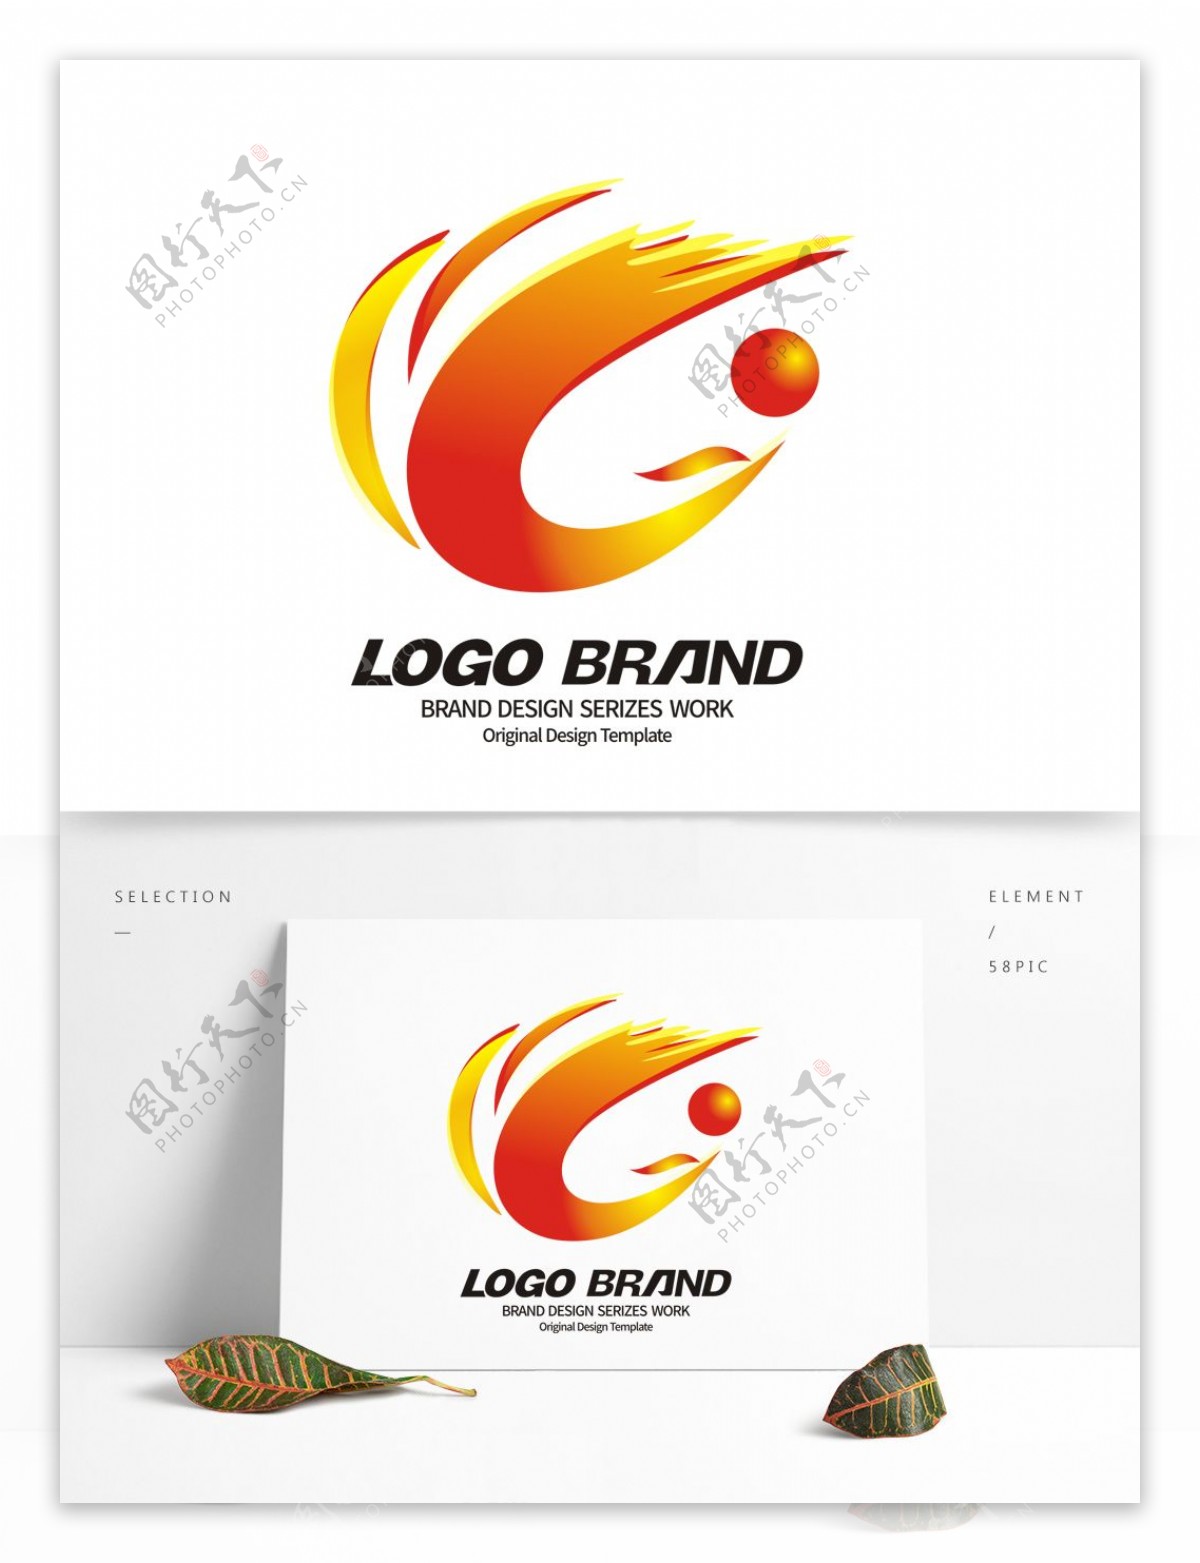 创意红黄凤凰C字母公司LOGO标志设计